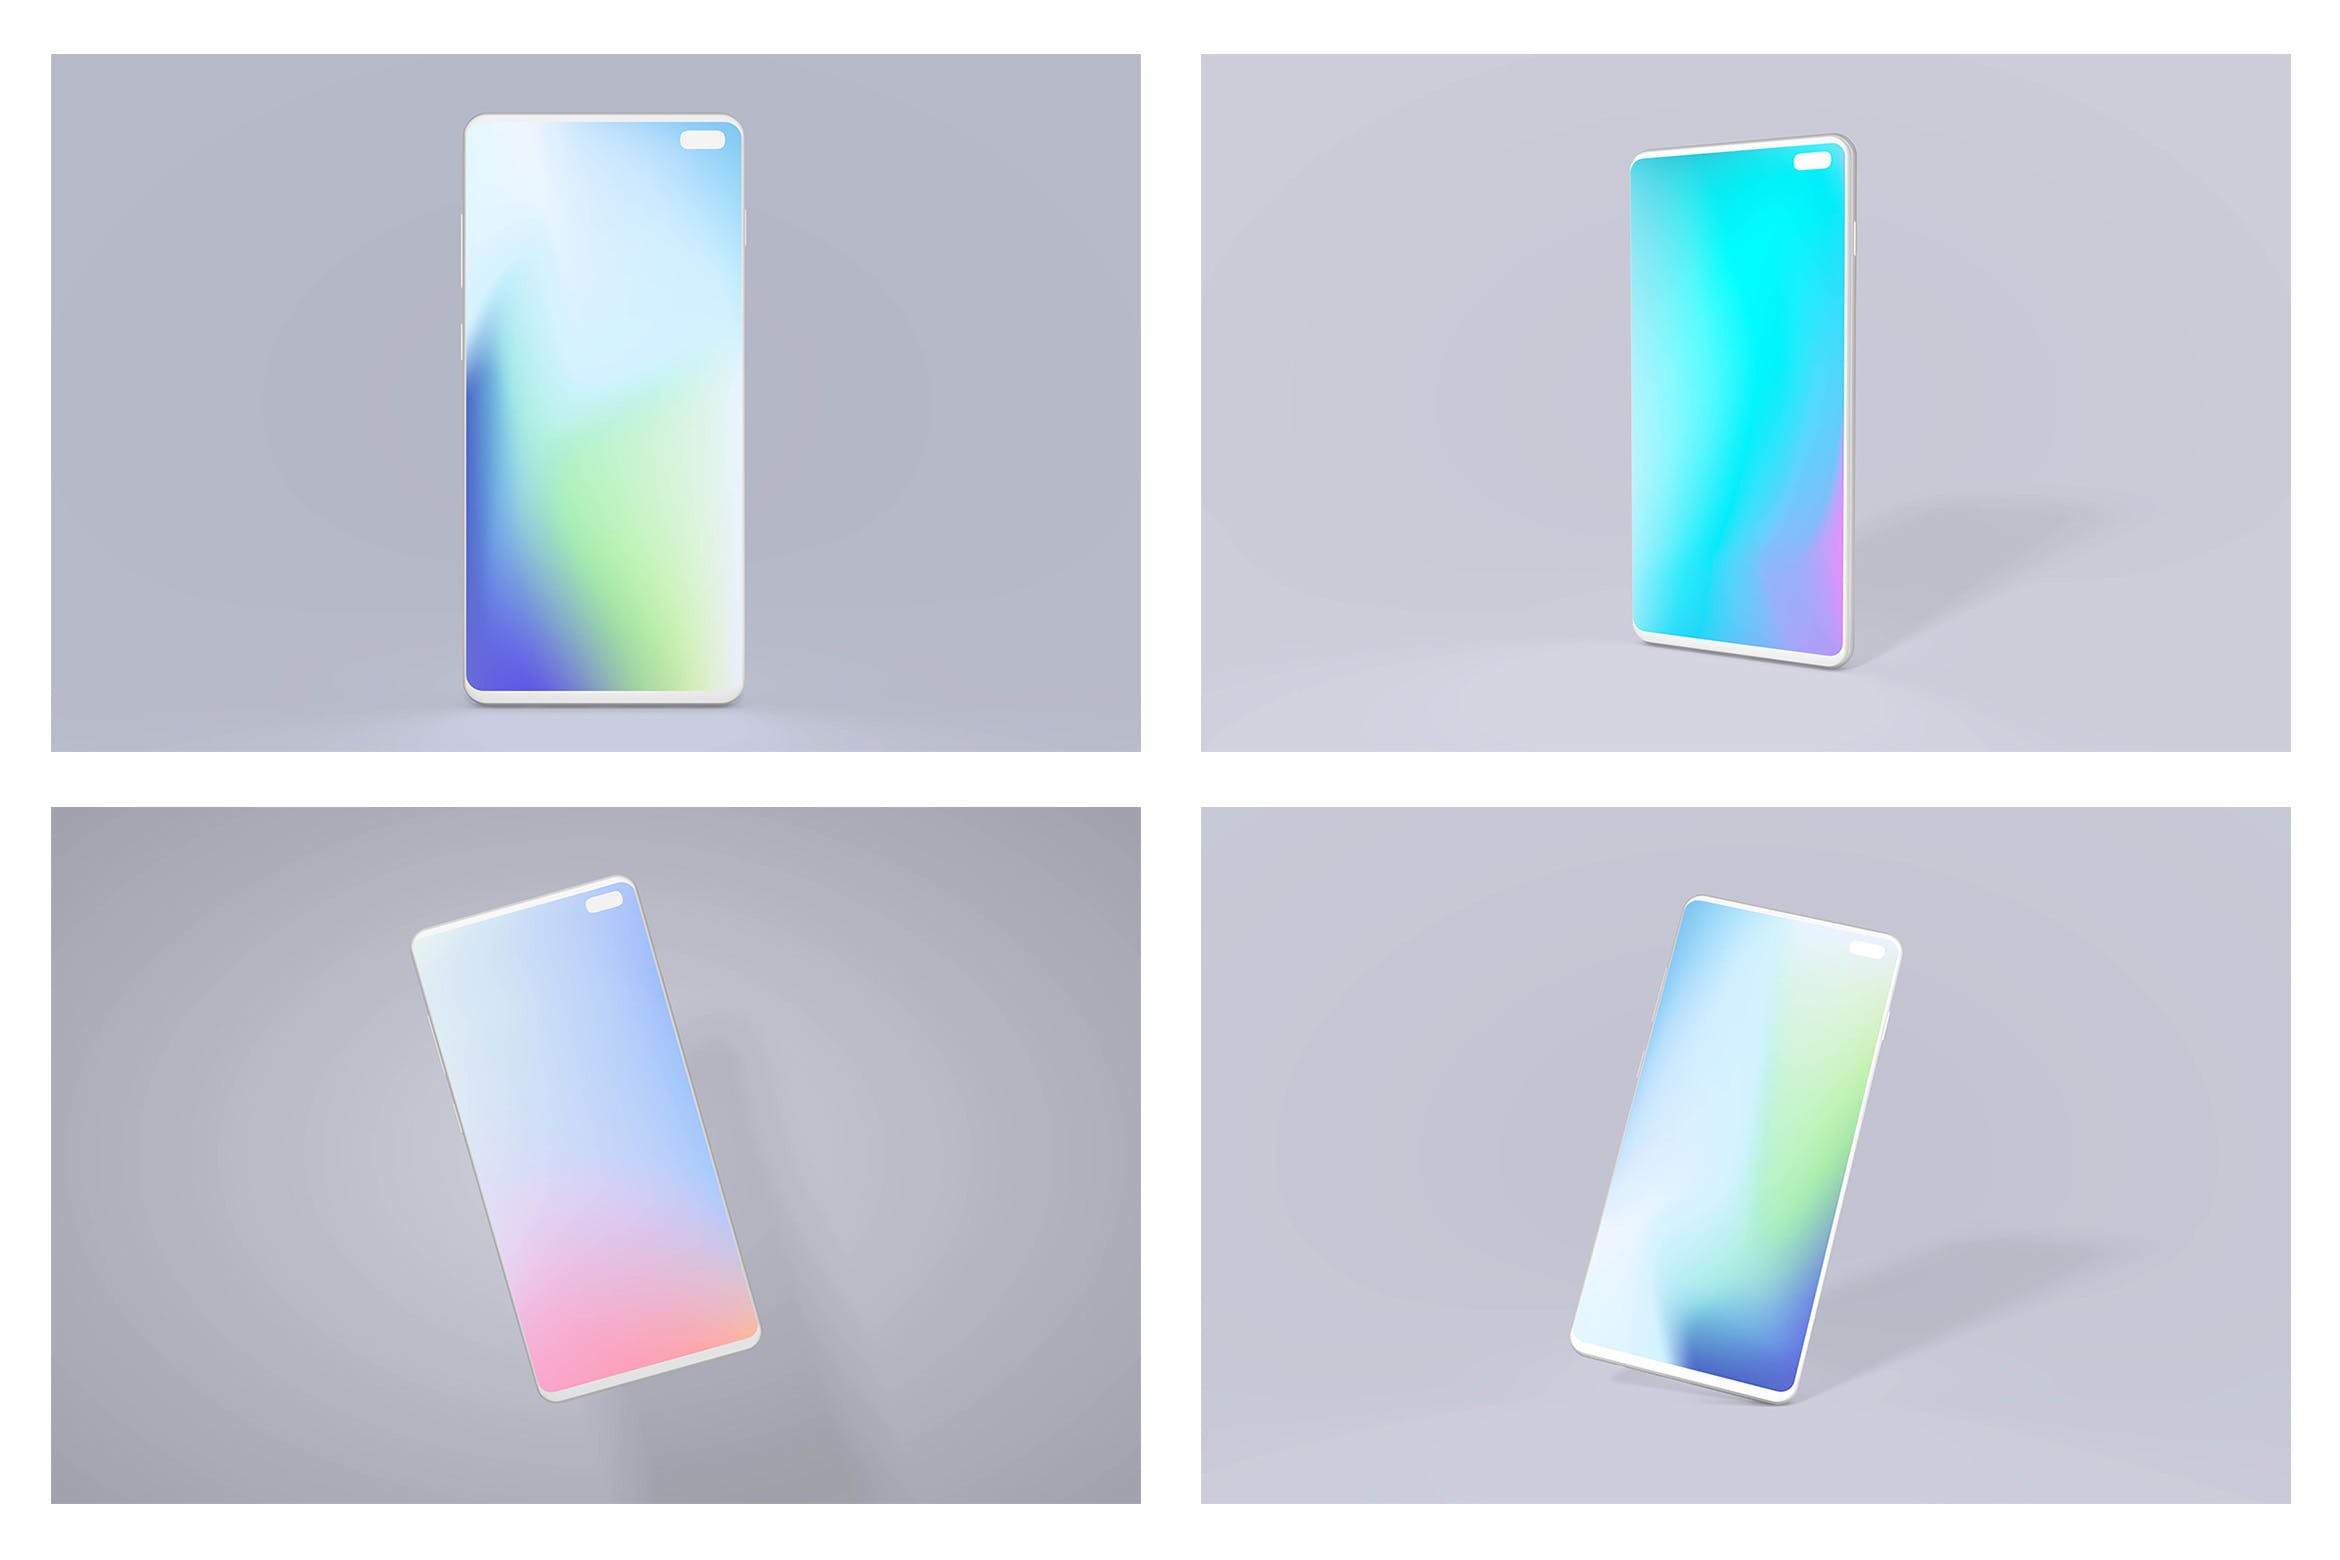 三星智能手机S10屏幕预览第一素材精选样机套装 Samsung S10 Android Mockup Bundle插图